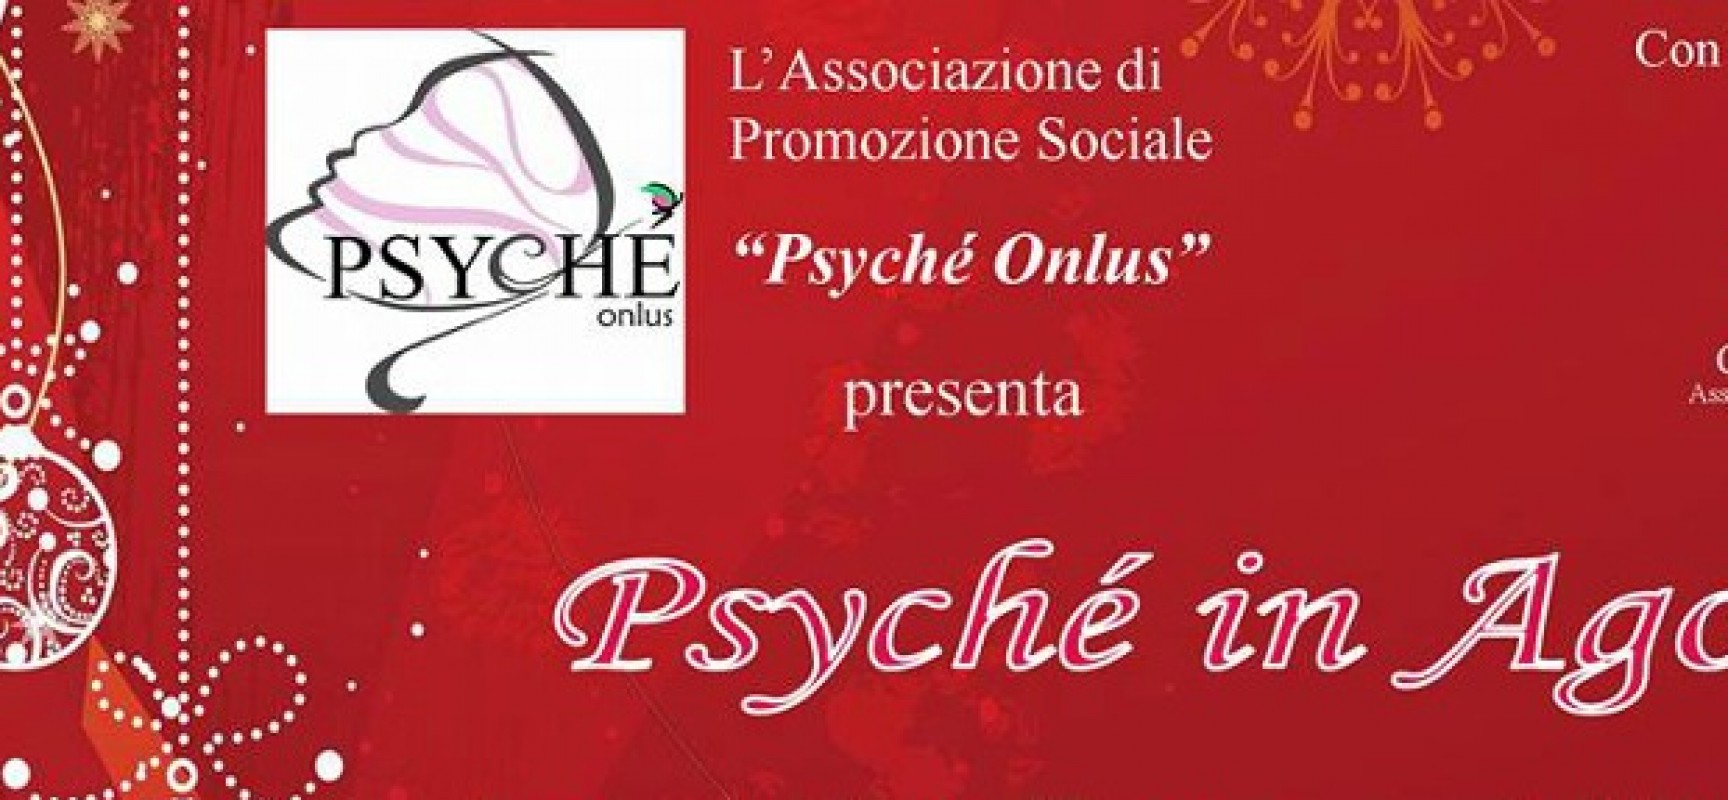 L’Associazione Psyché Onlus in piazza per le festività natalizie